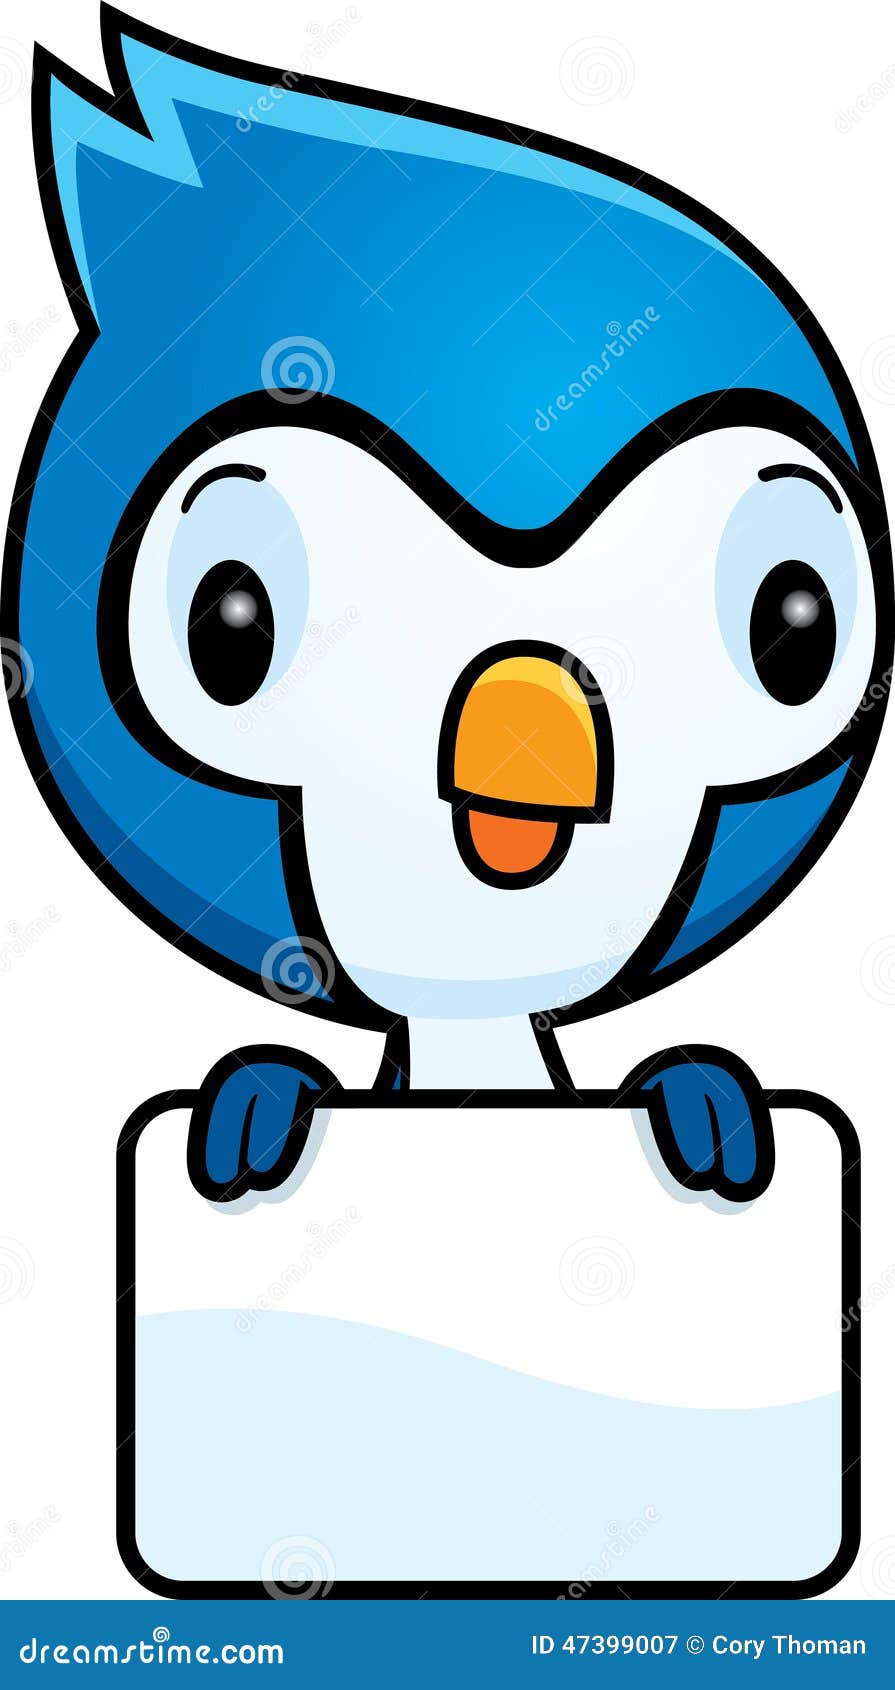 cartoon cute blue jay